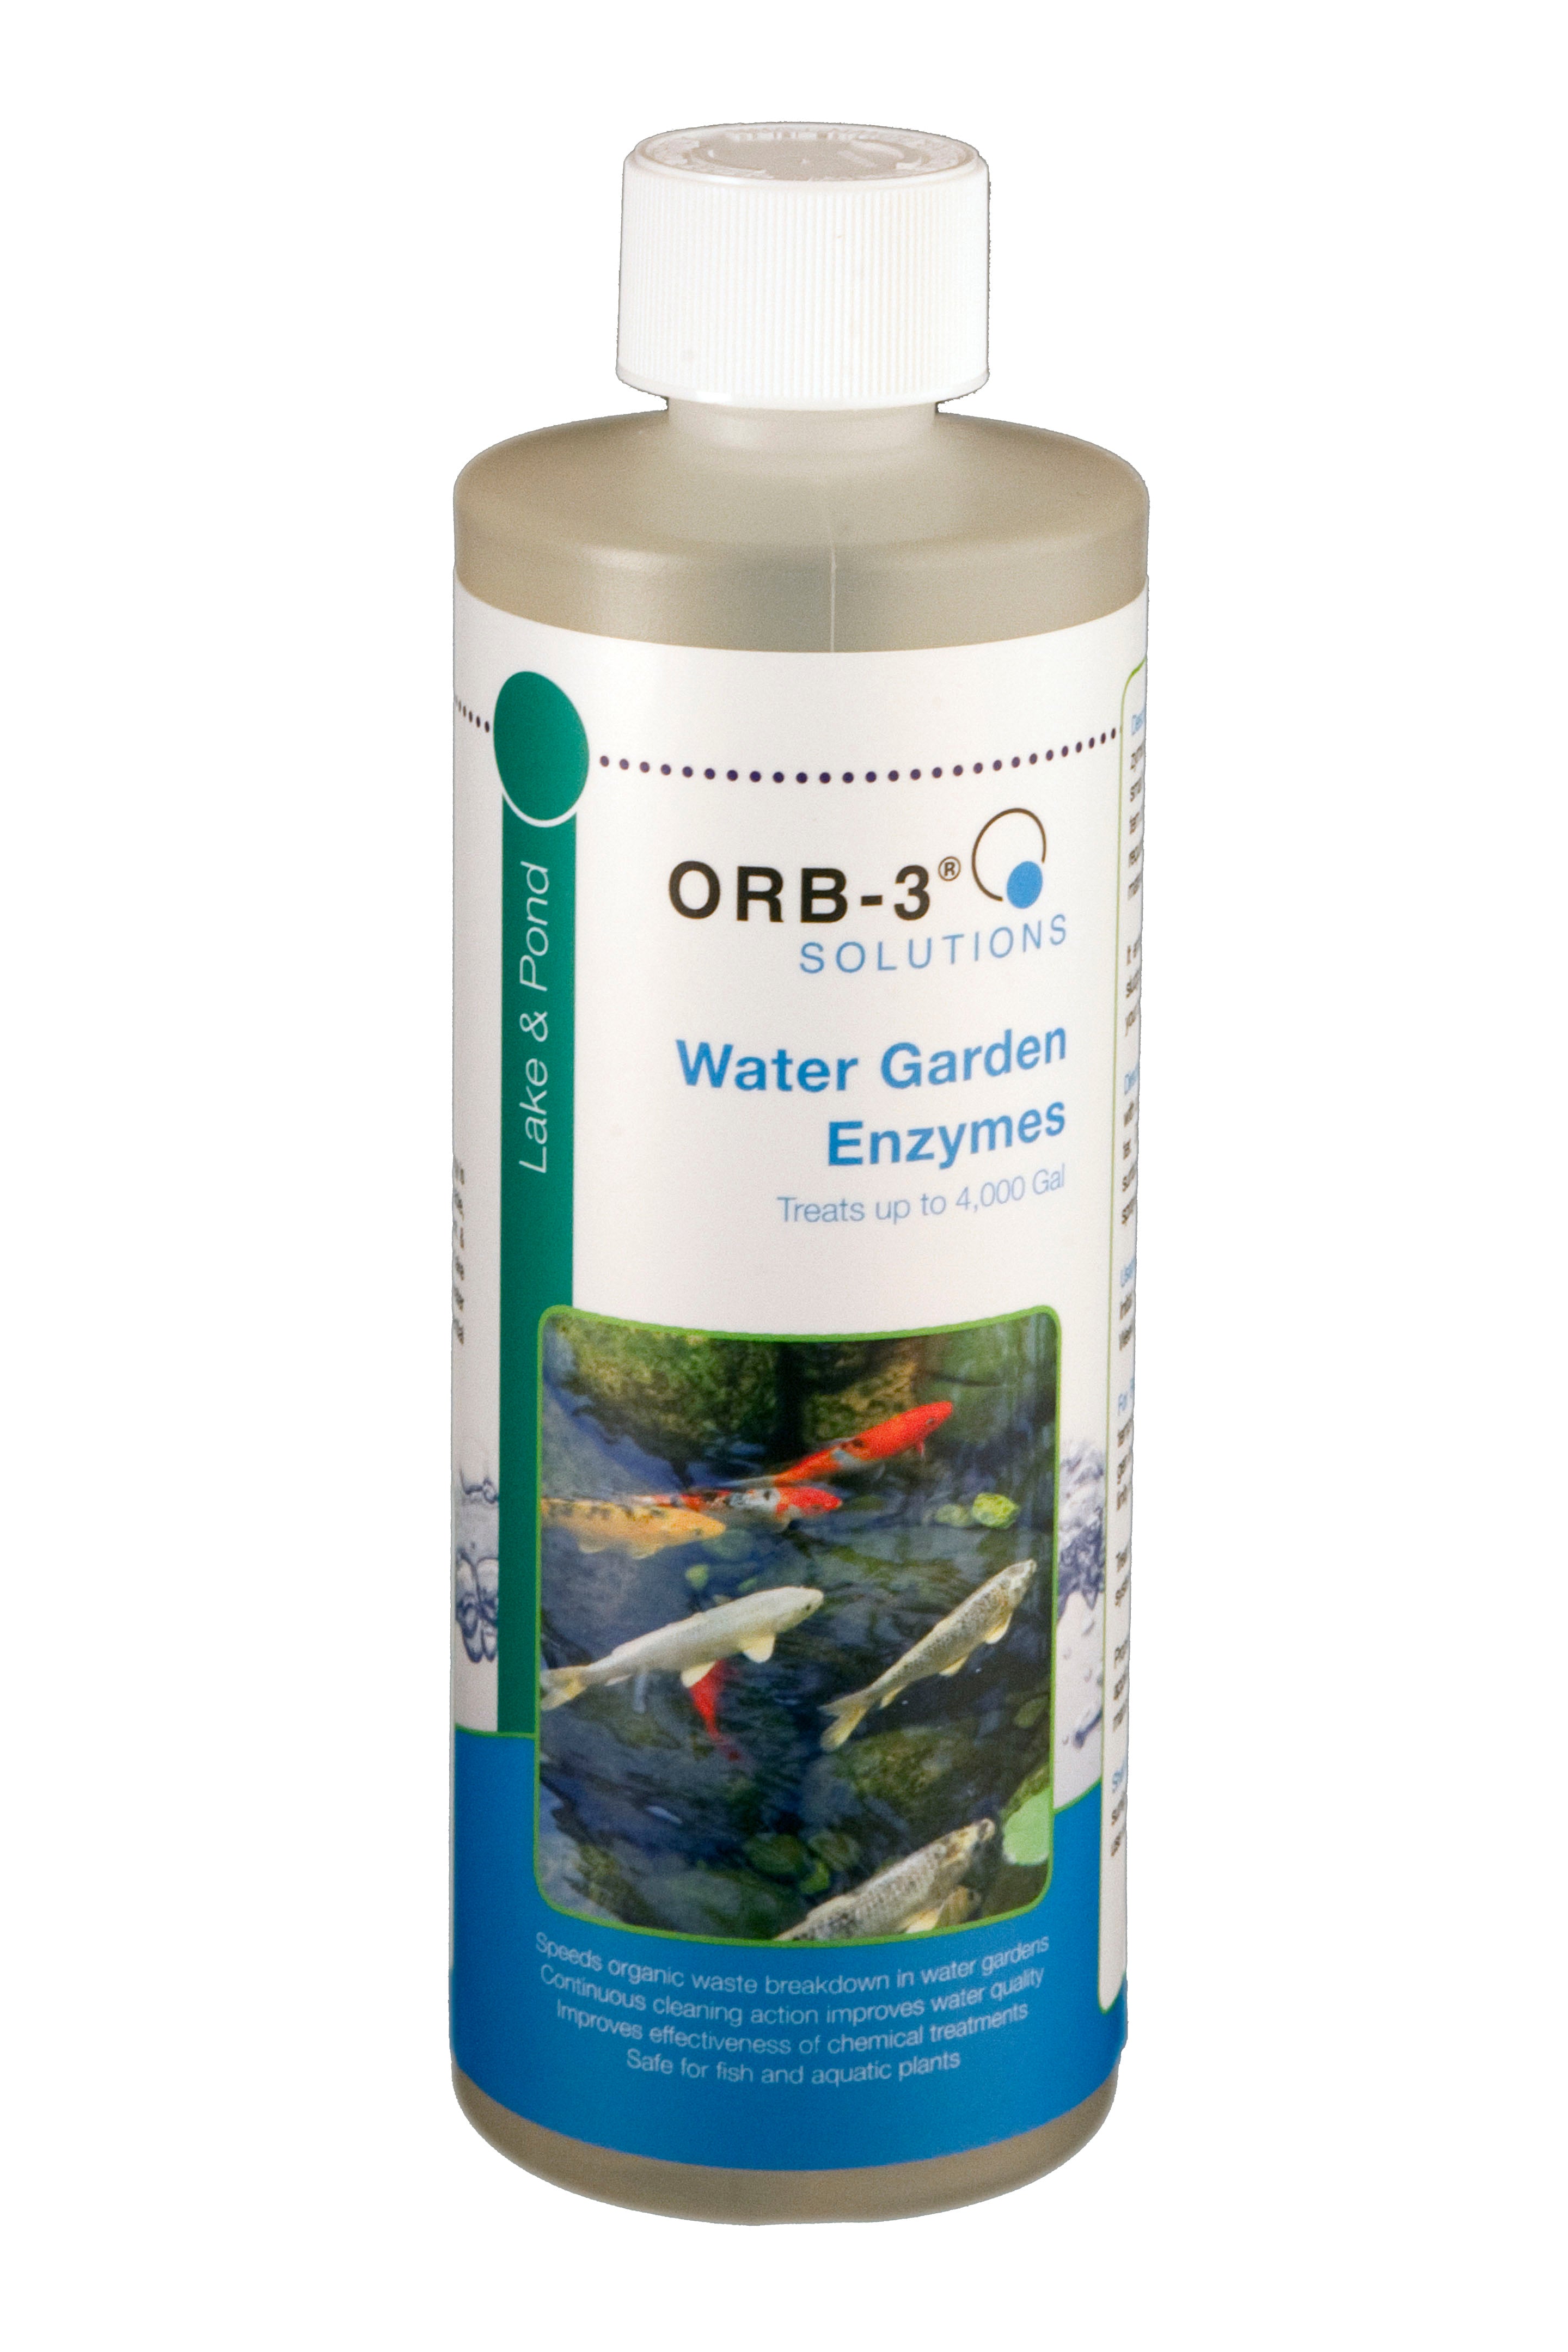 Orb-3 Lake & Pond Enzymes